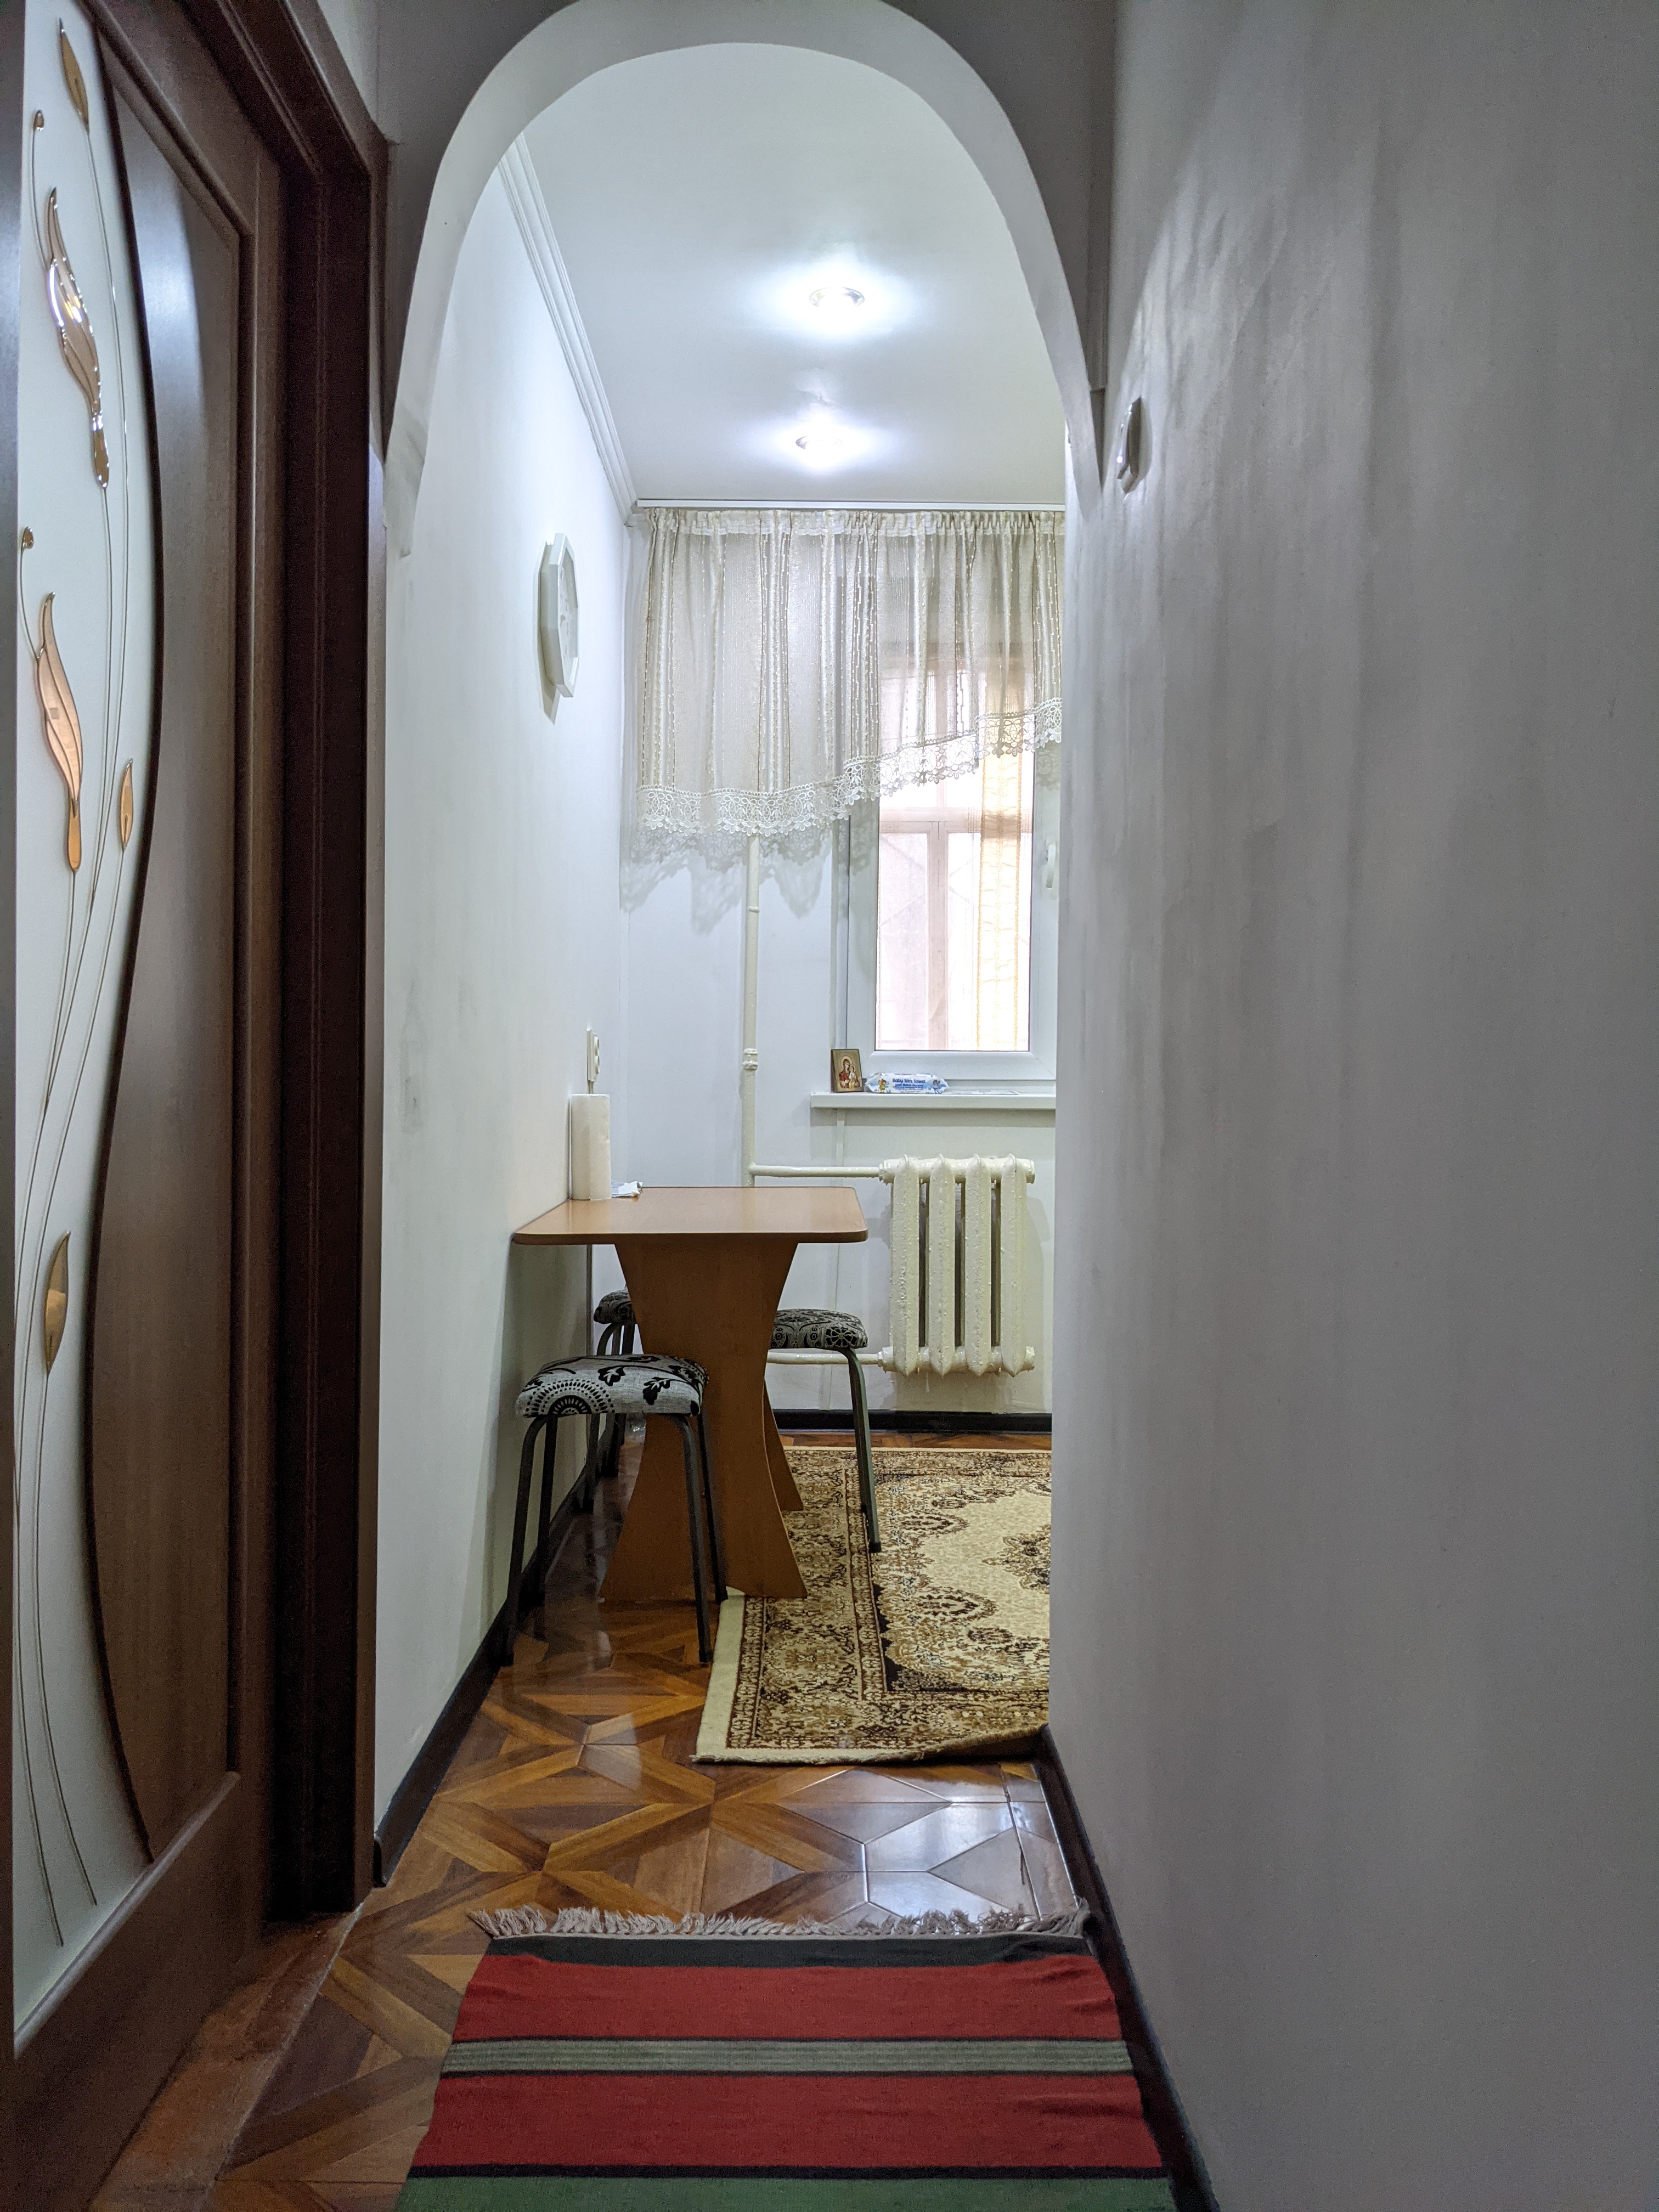 VÂNDUT Apartament de vânzare, Chișinău, sec. Botanica, 1 odaie, Valea Trandafirilor, 38m2, et.1